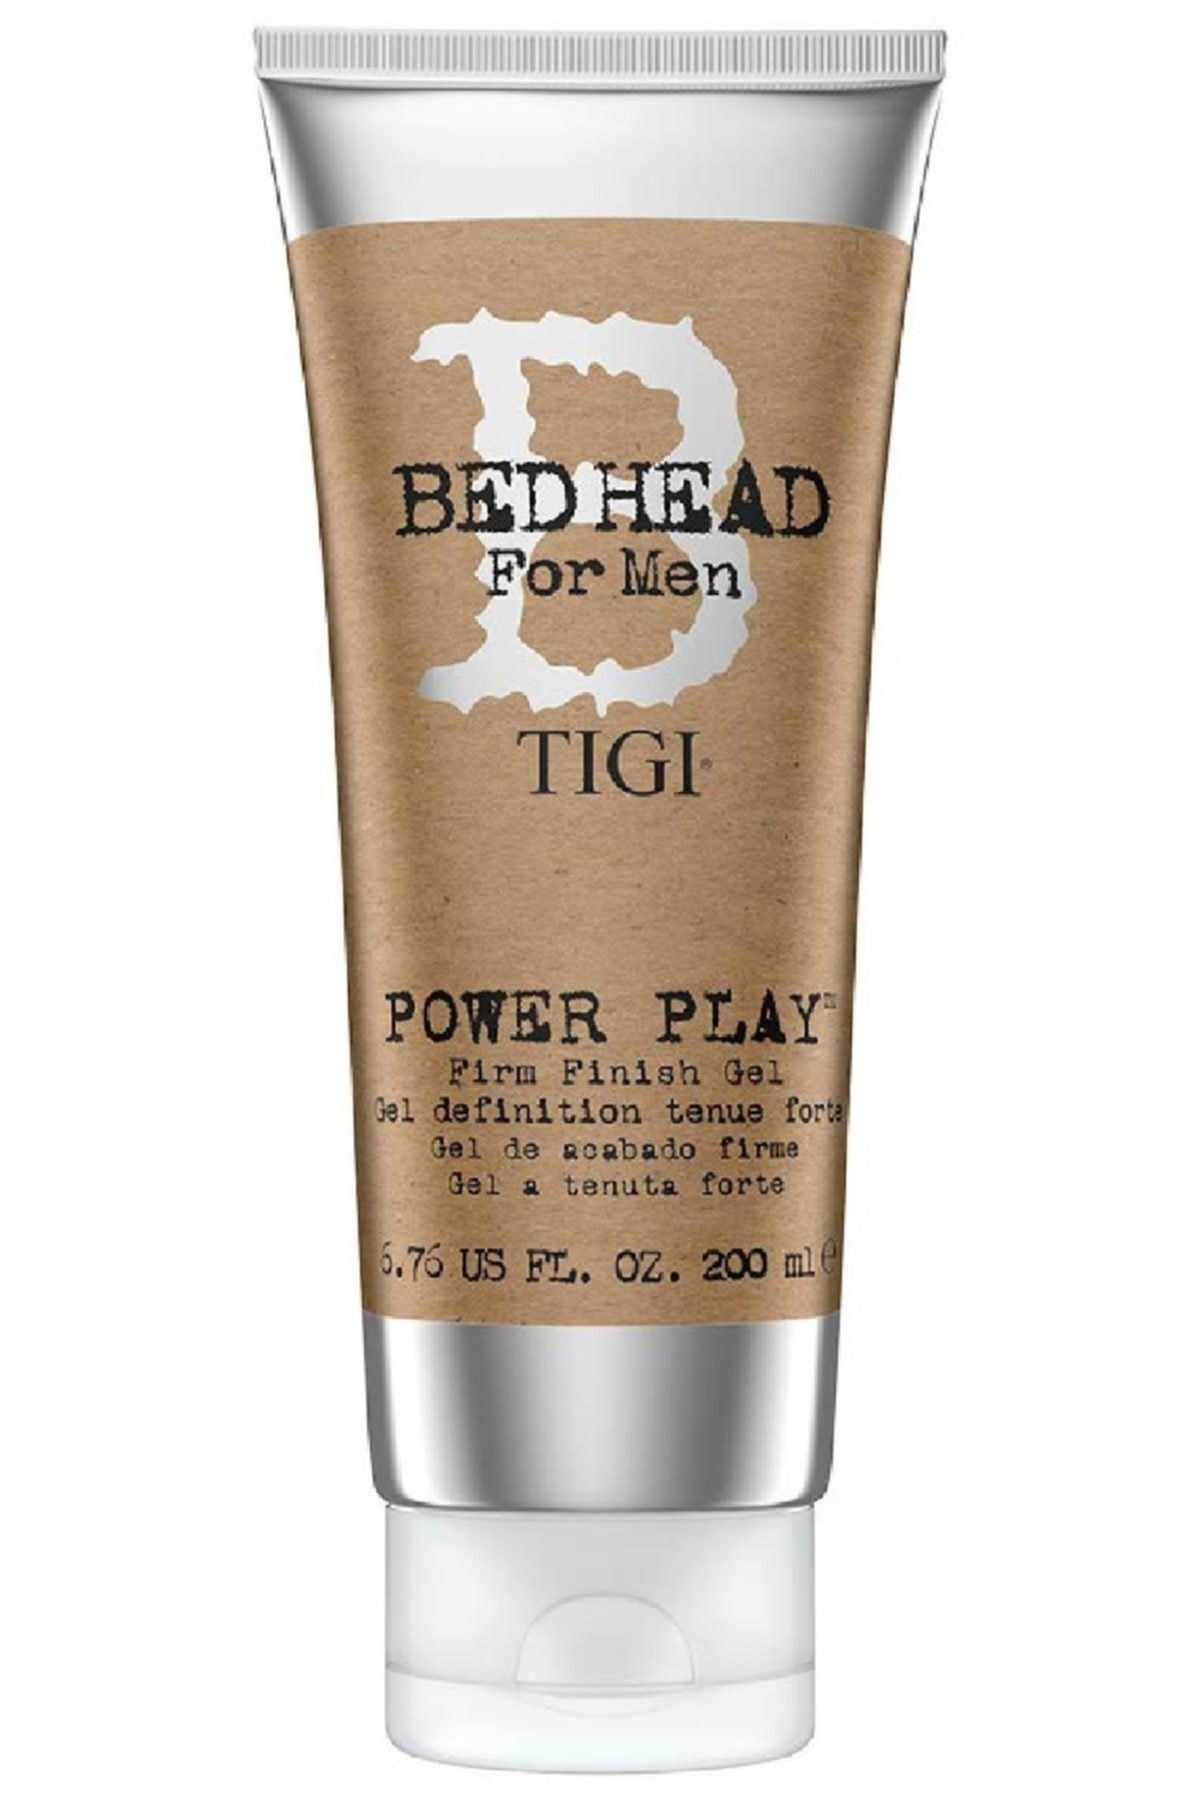 Tigi Bed Head For Men Power Play Saç Şekillendirici Jel 200 ml